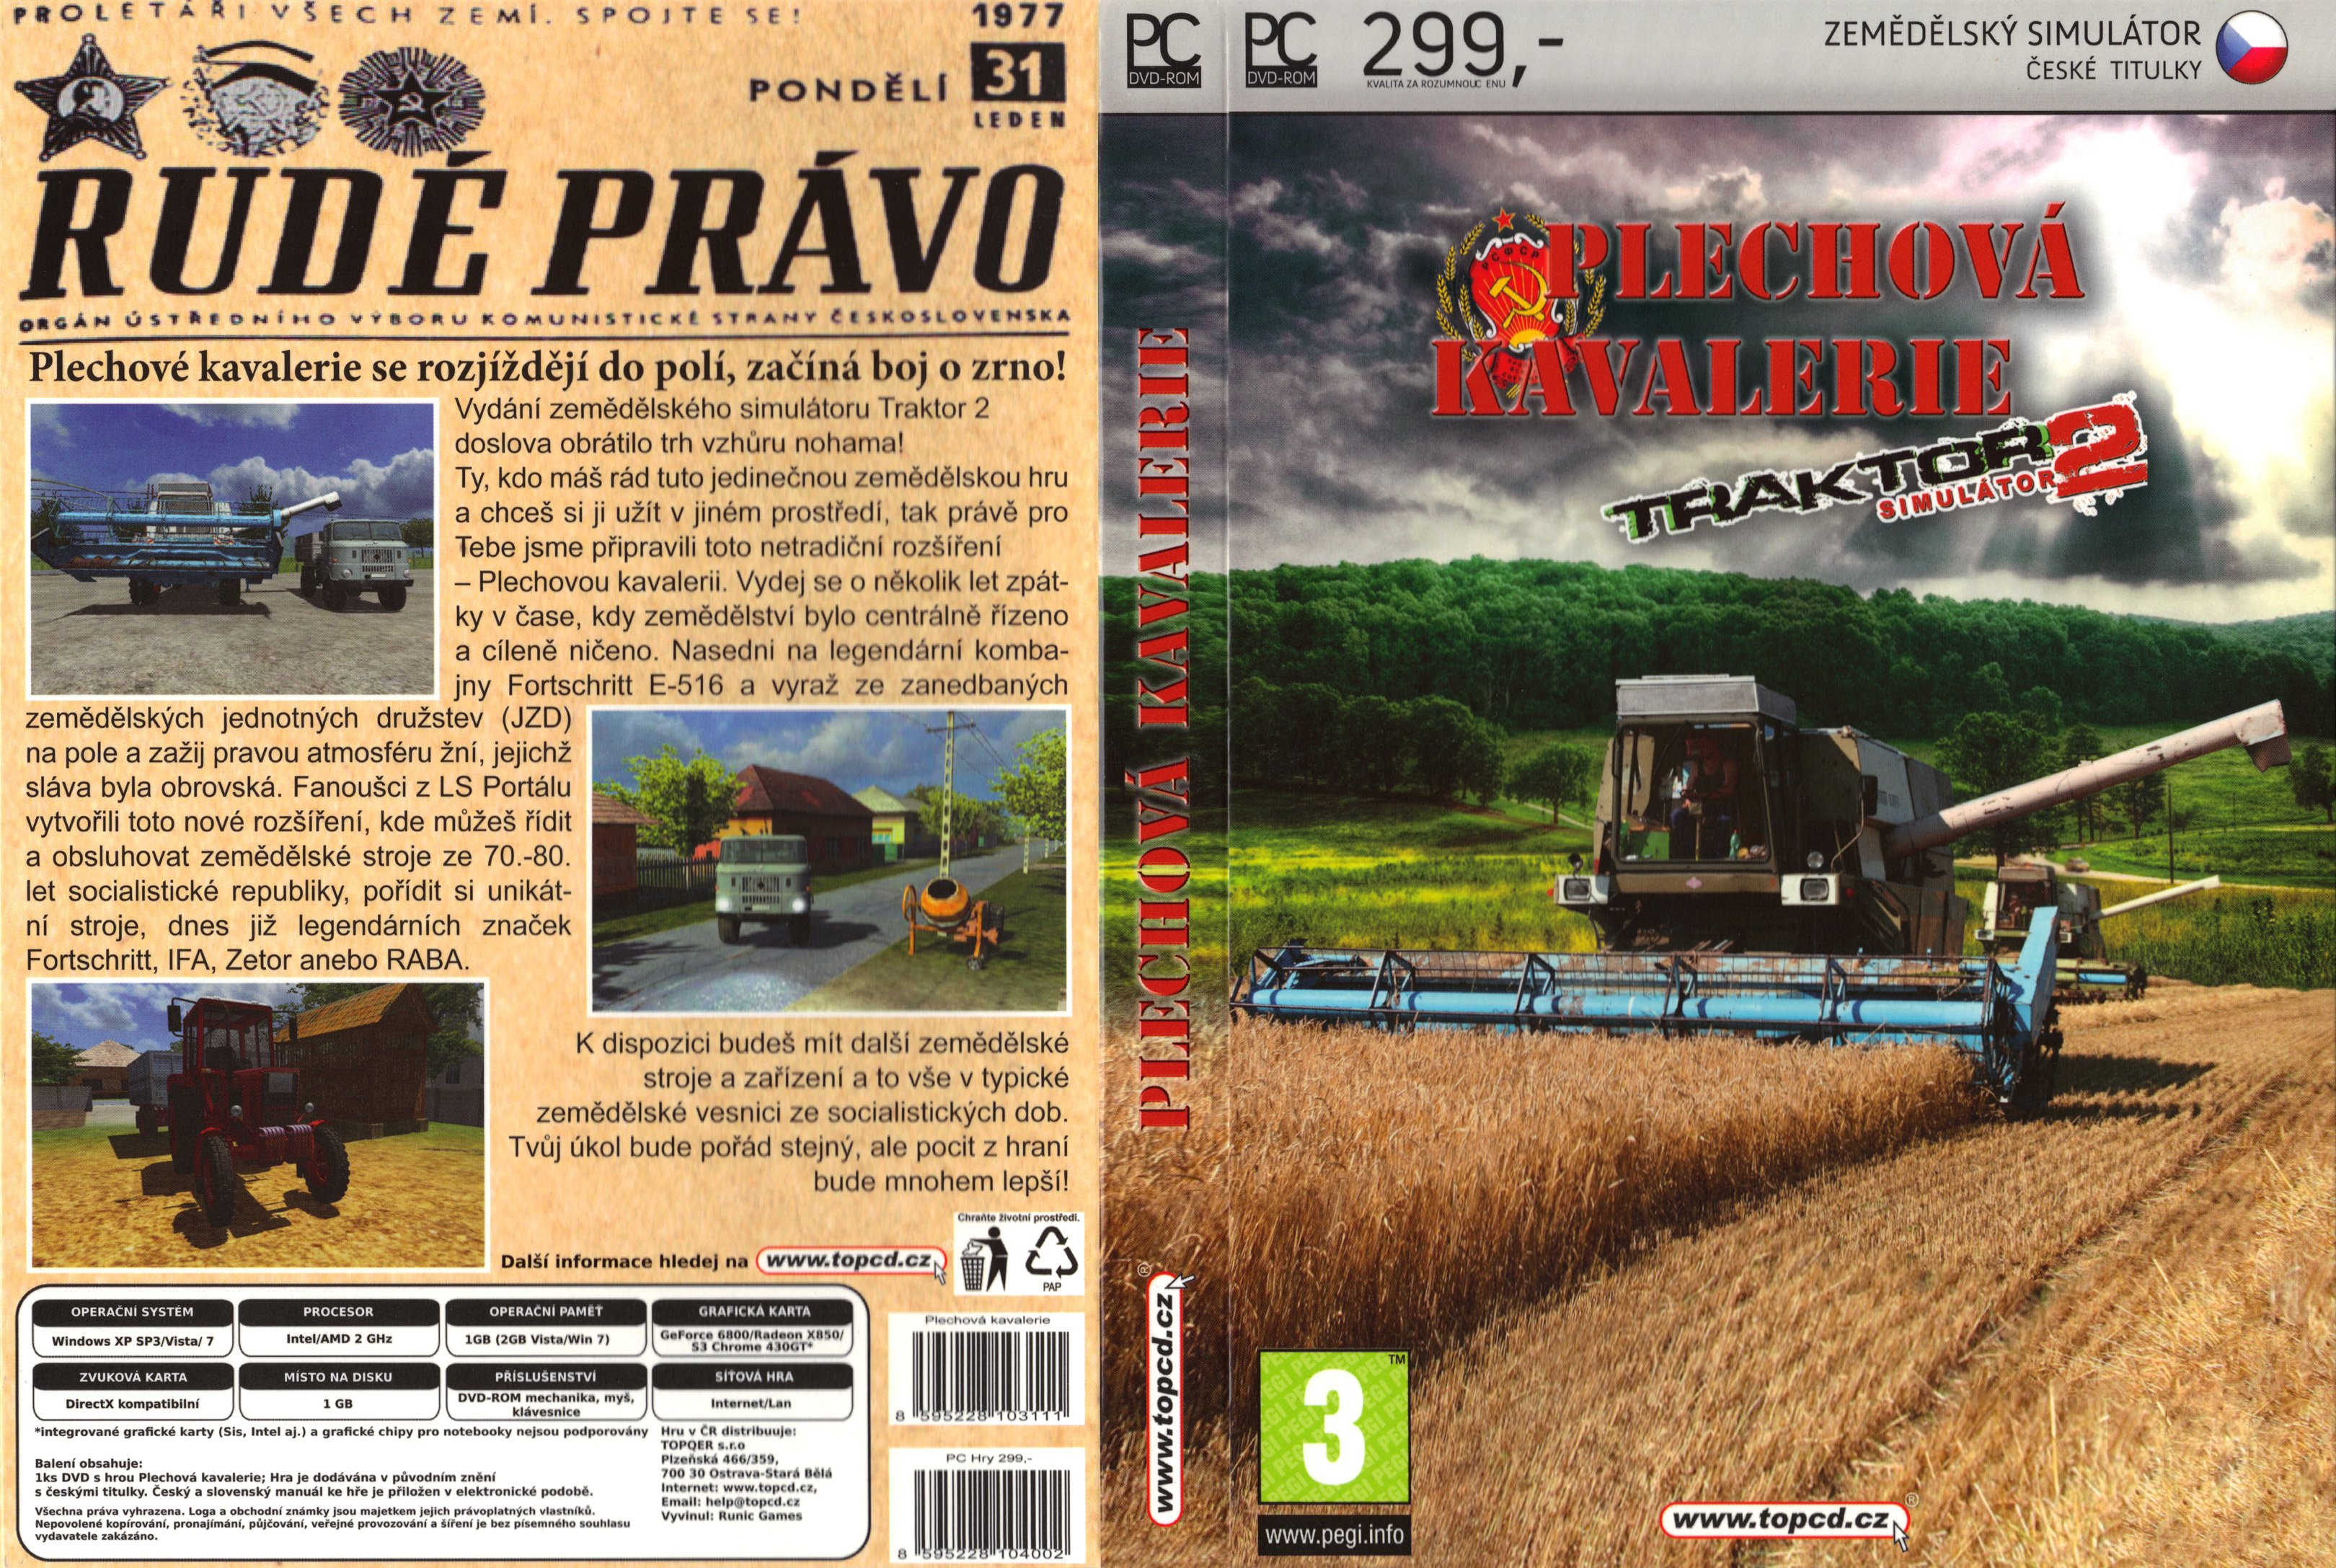 TRAKTOR Simultor 2: Plechov kavalerie - DVD obal